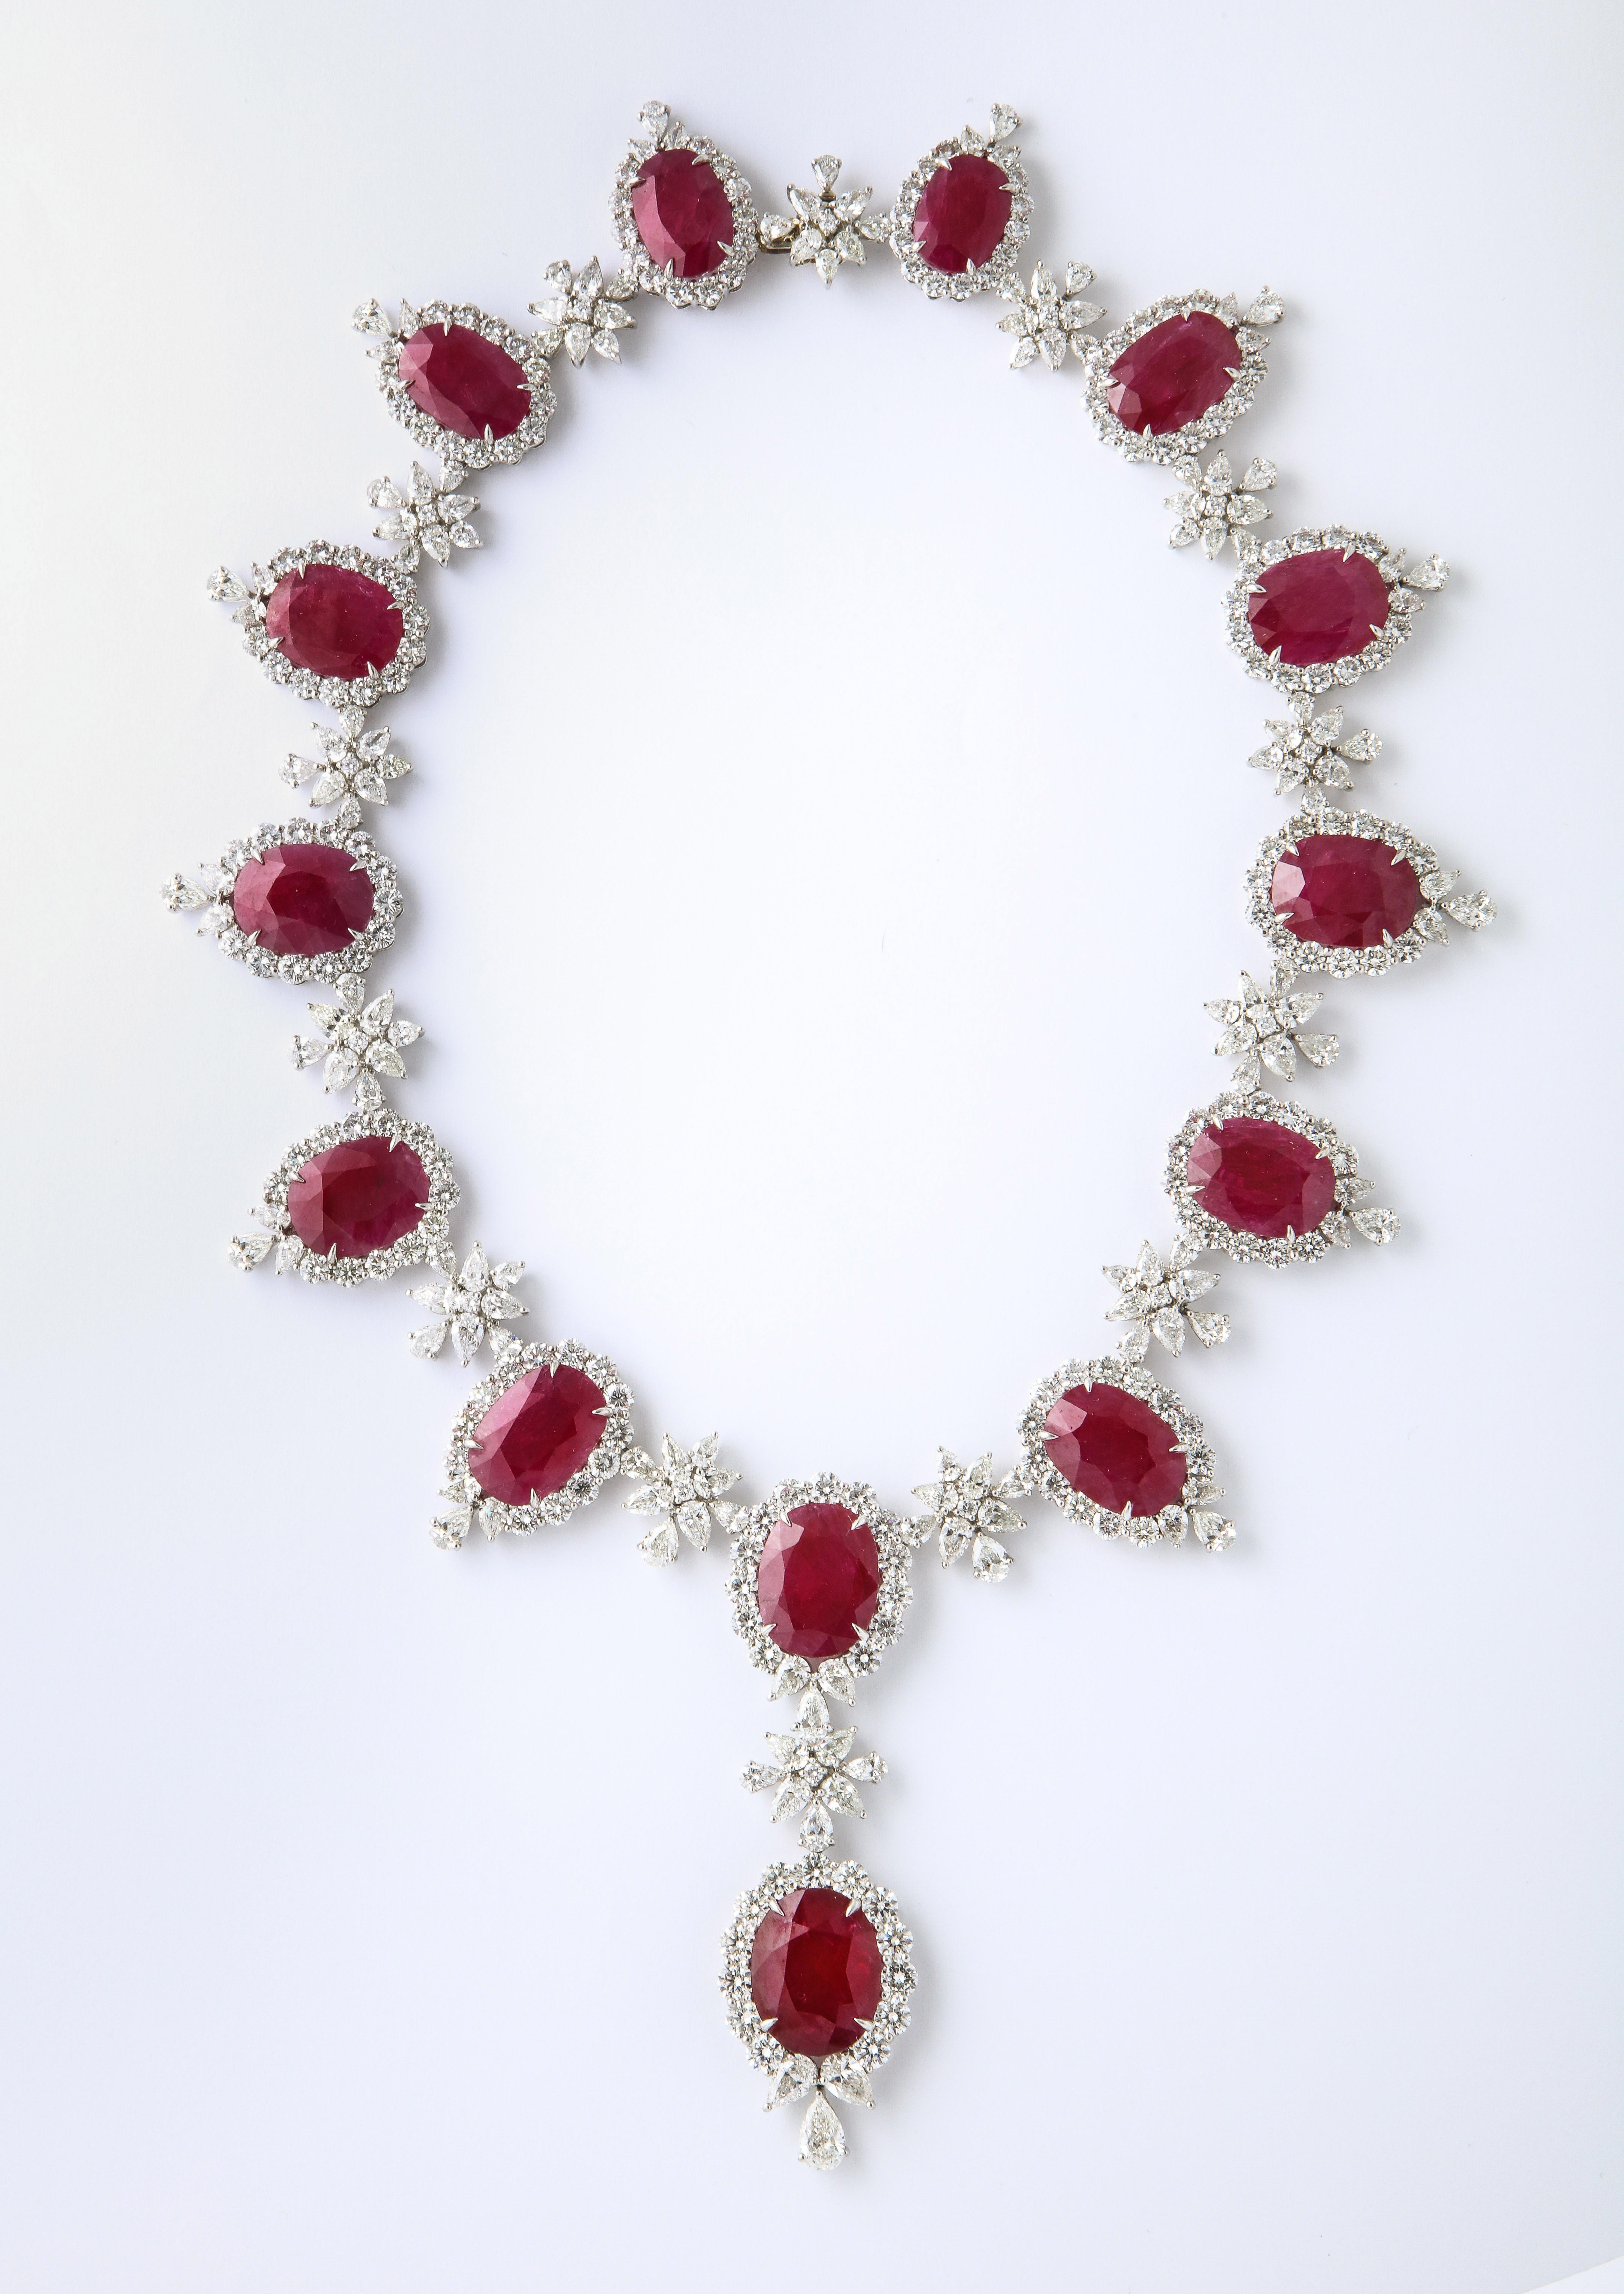 
Un important collier de rubis et de diamants 

209,10 carats de rubis 